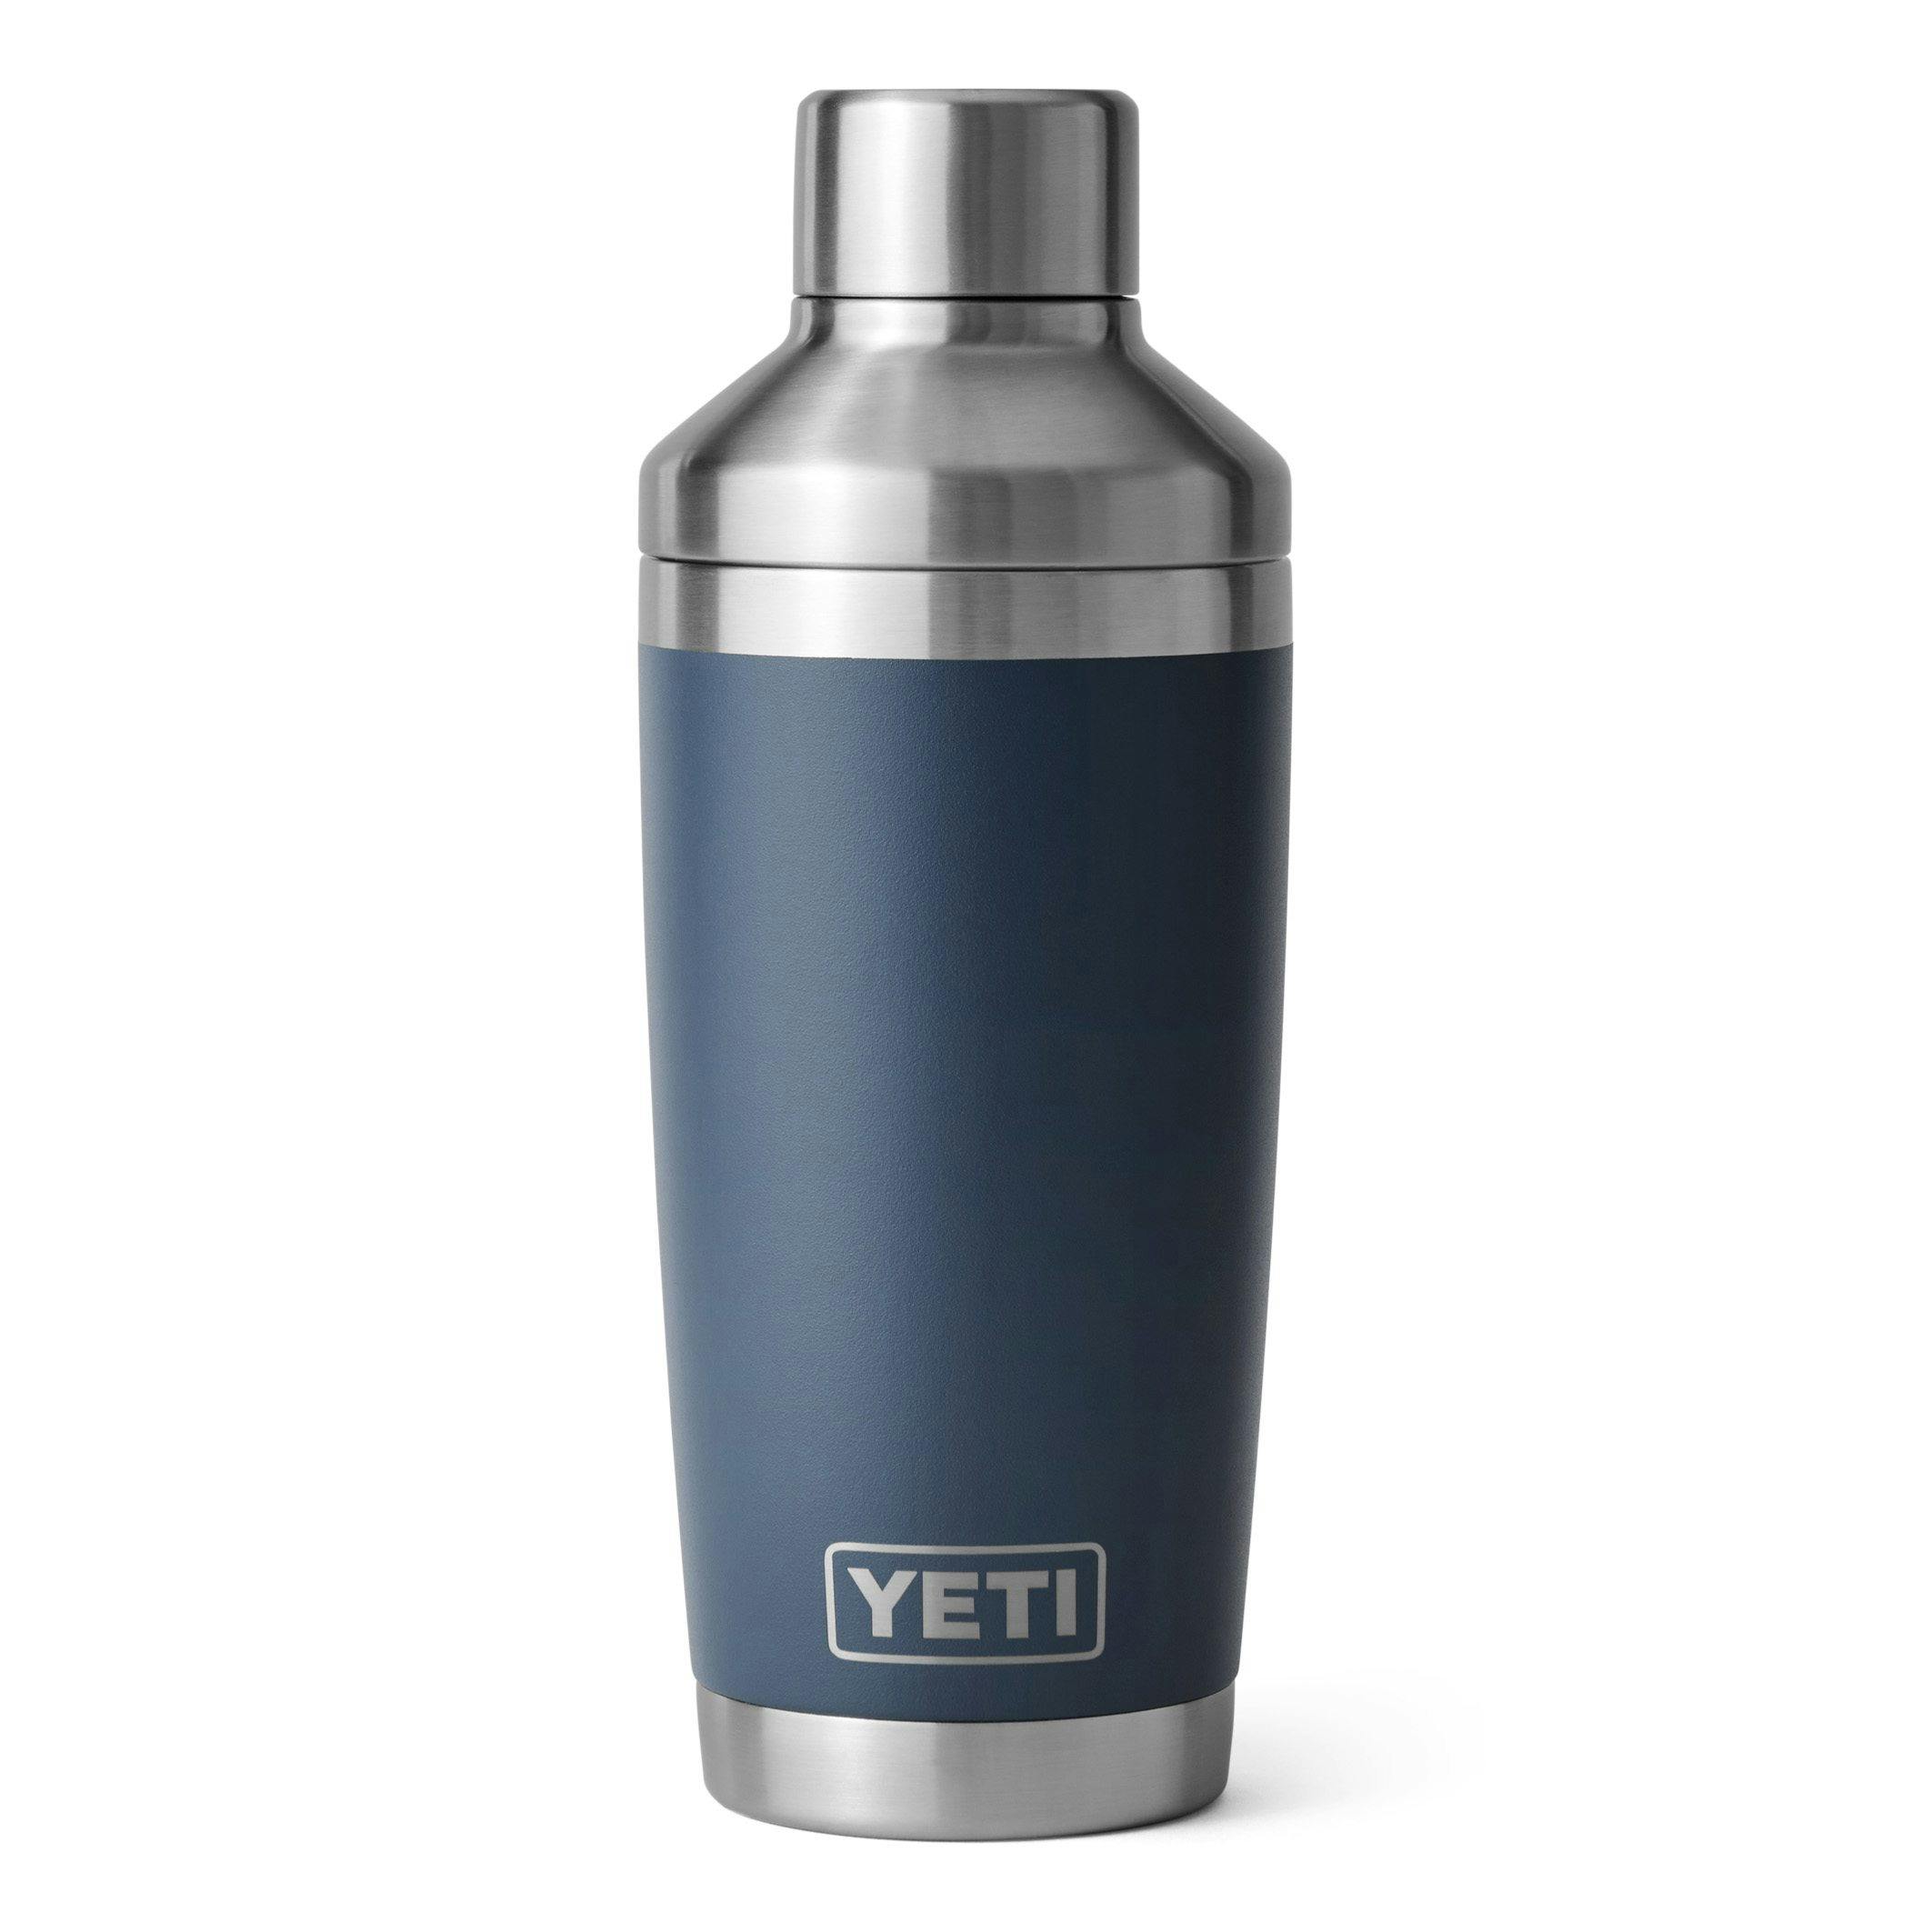 YETI Rambler Beverage Bucket, Double-Wall Vacuum Insulated Ice Bucket with  Lid, Navy